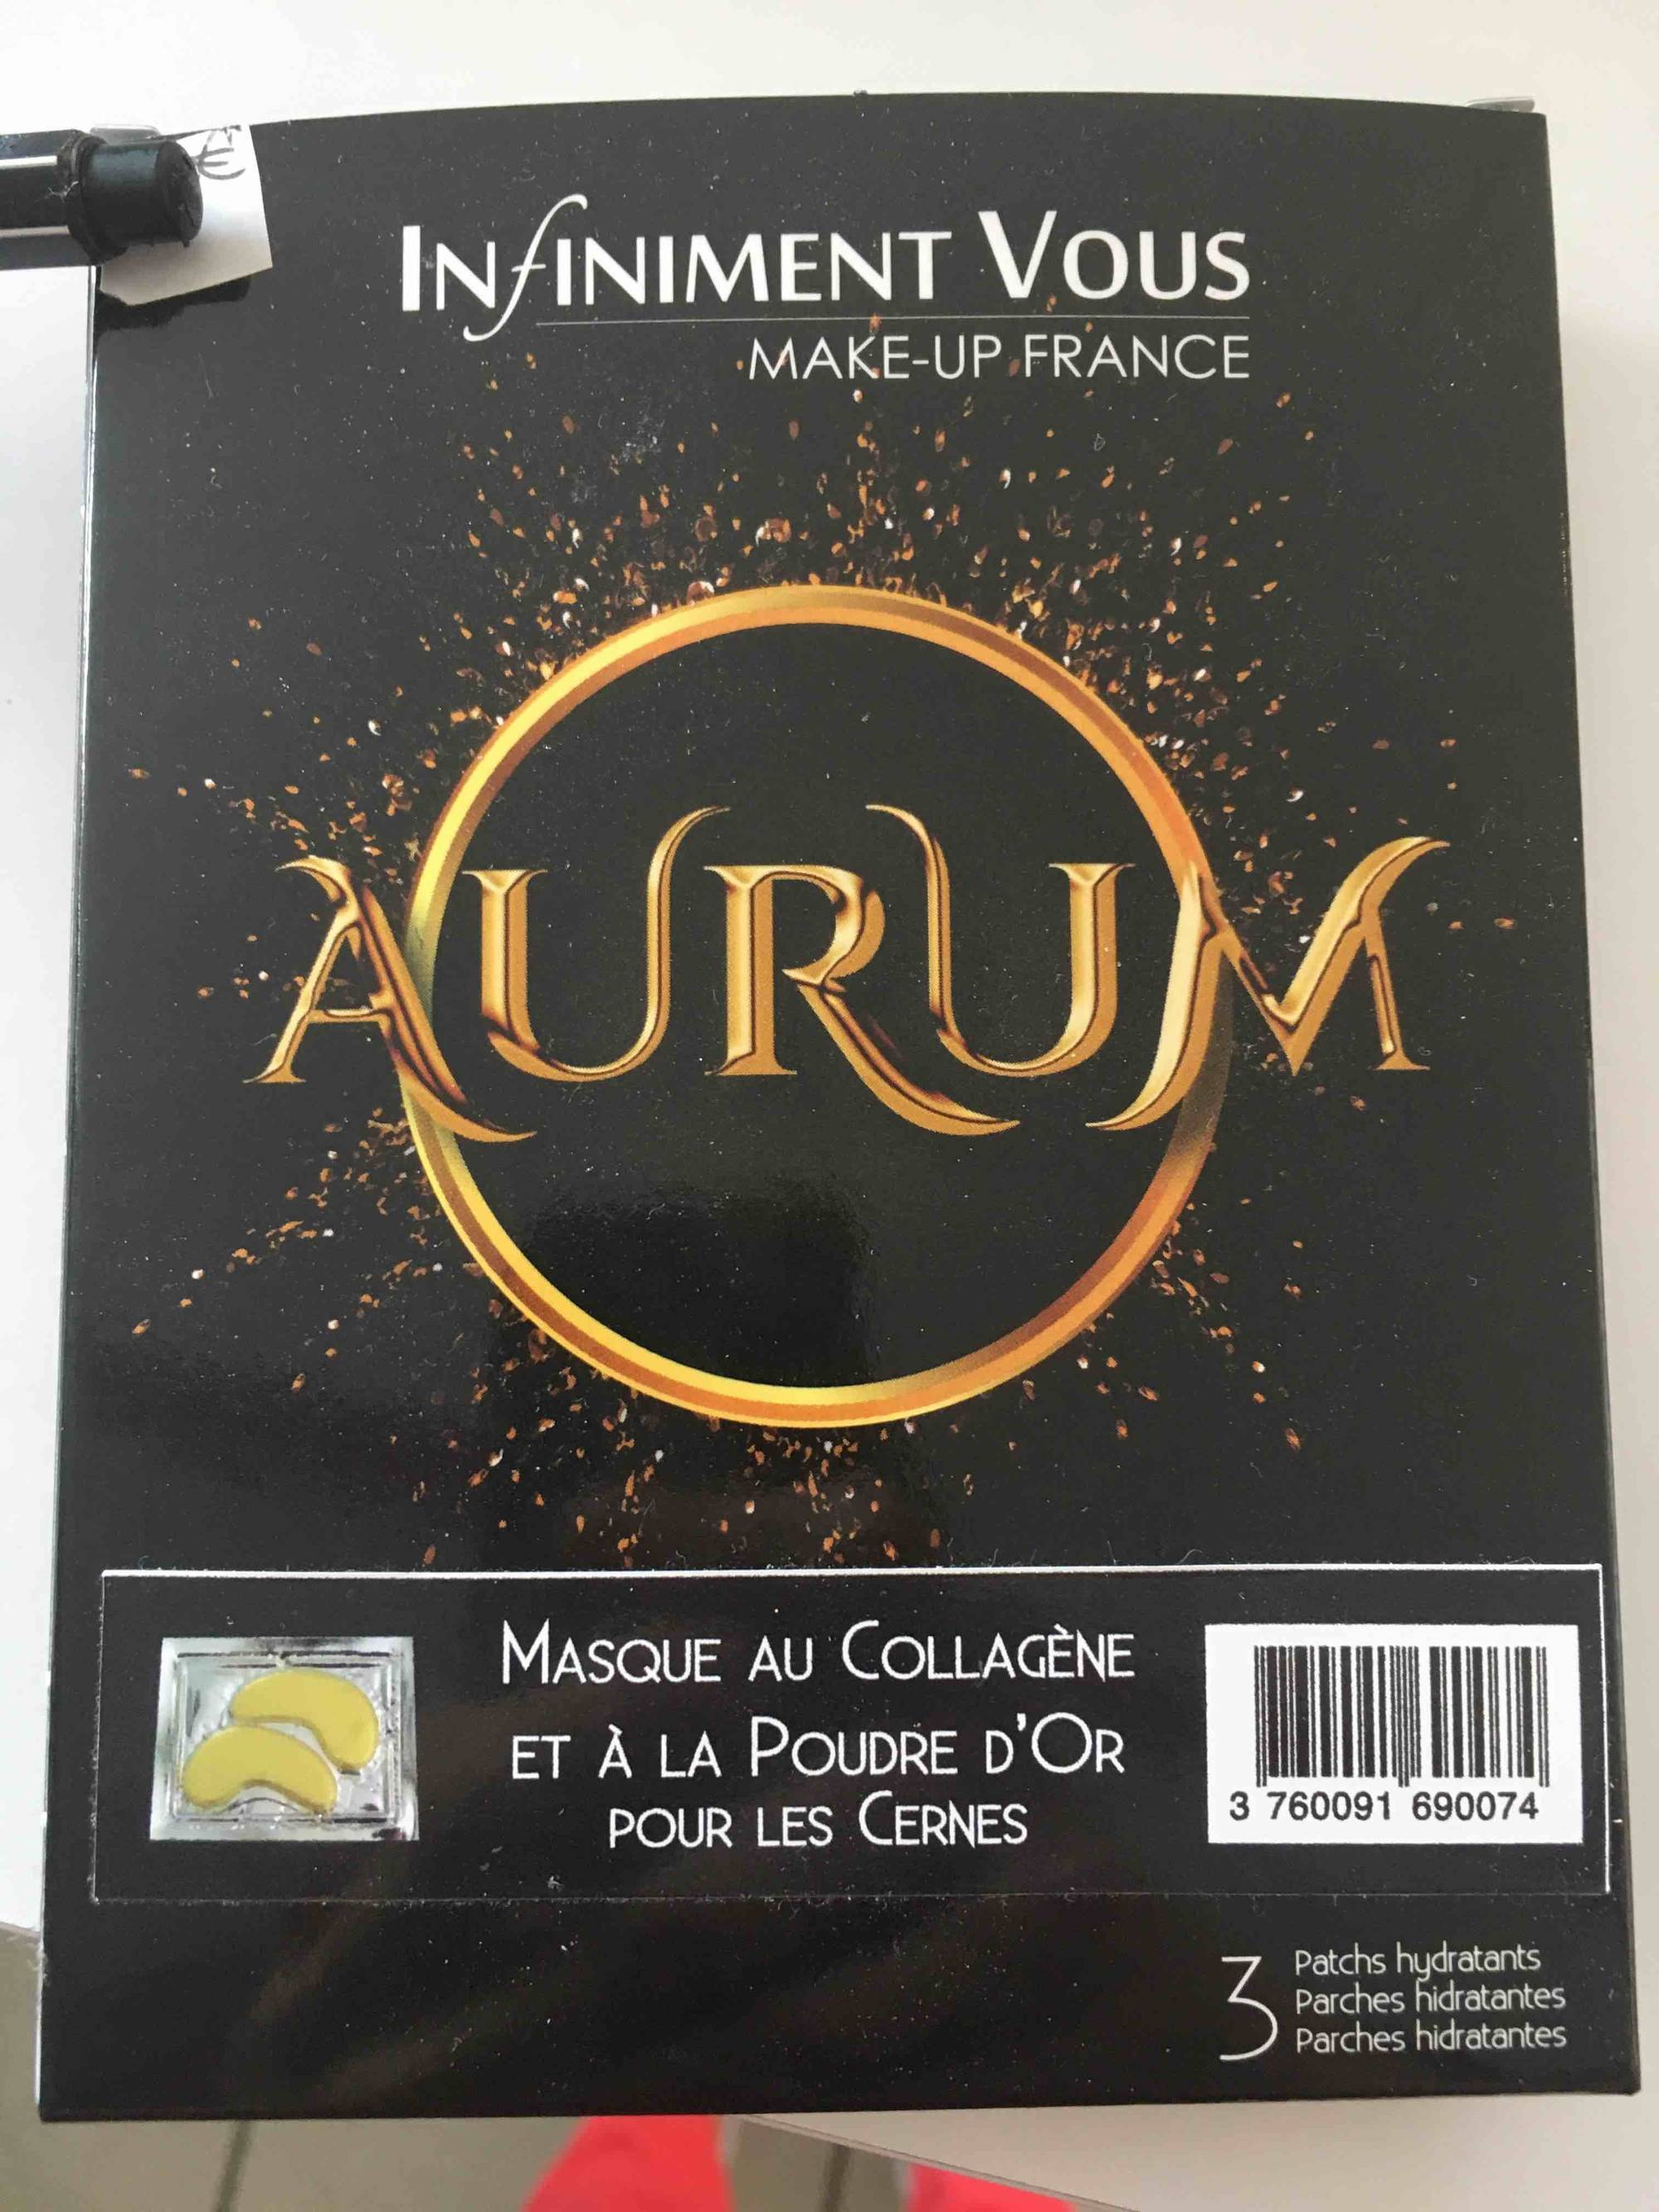 INFINIMENT VOUS - Aurum - Masque au Collagène et à la Poudre d'or